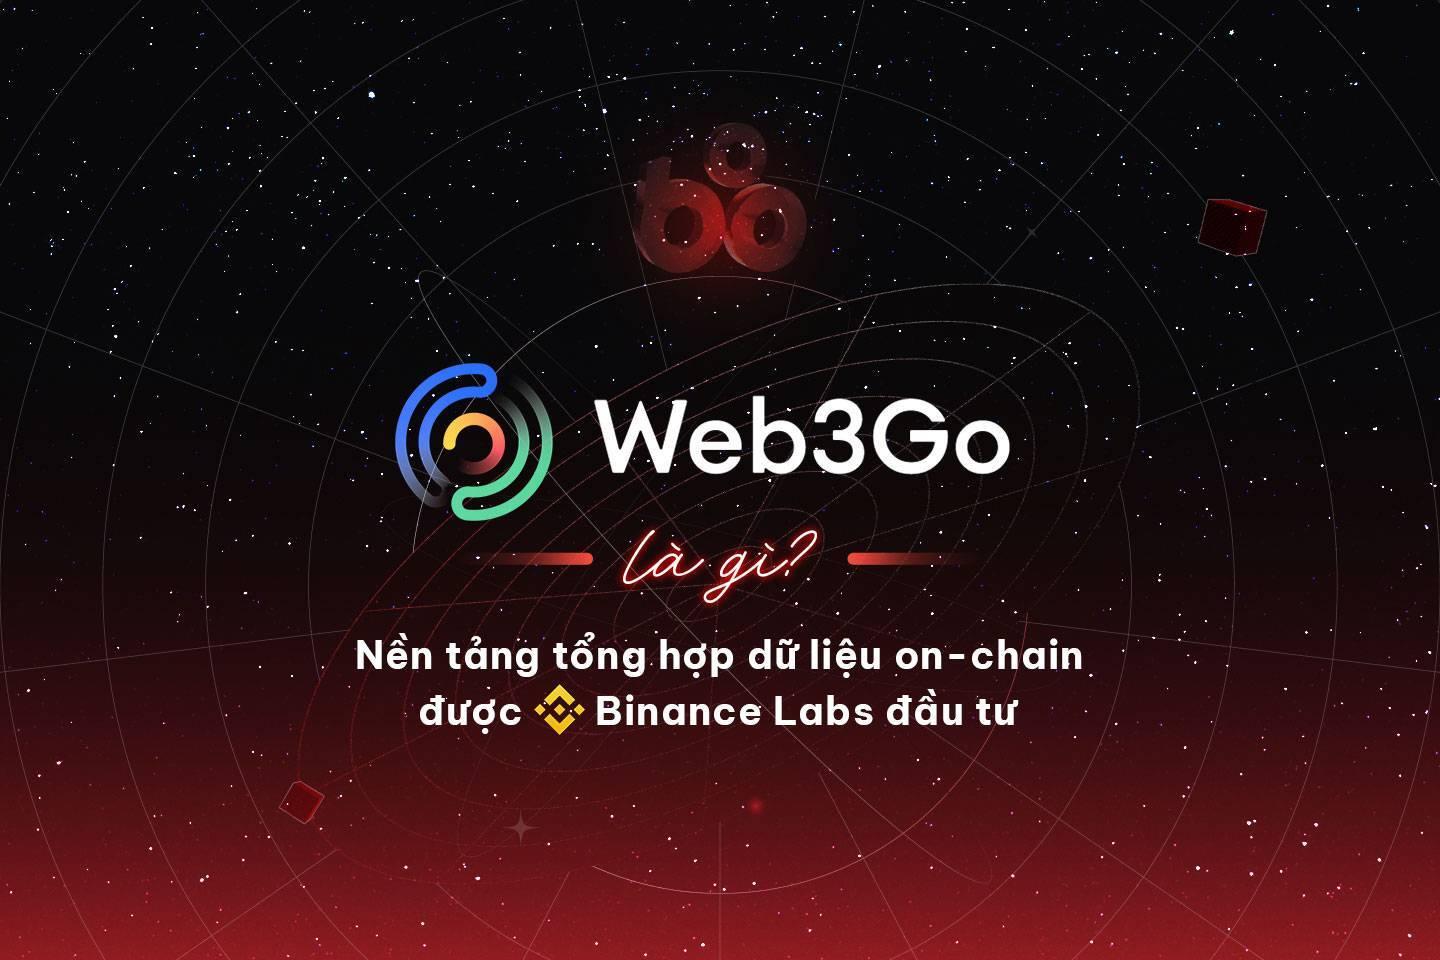 web3go-la-gi-nen-tang-tong-hop-du-lieu-on-chain-duoc-binance-labs-dau-tu